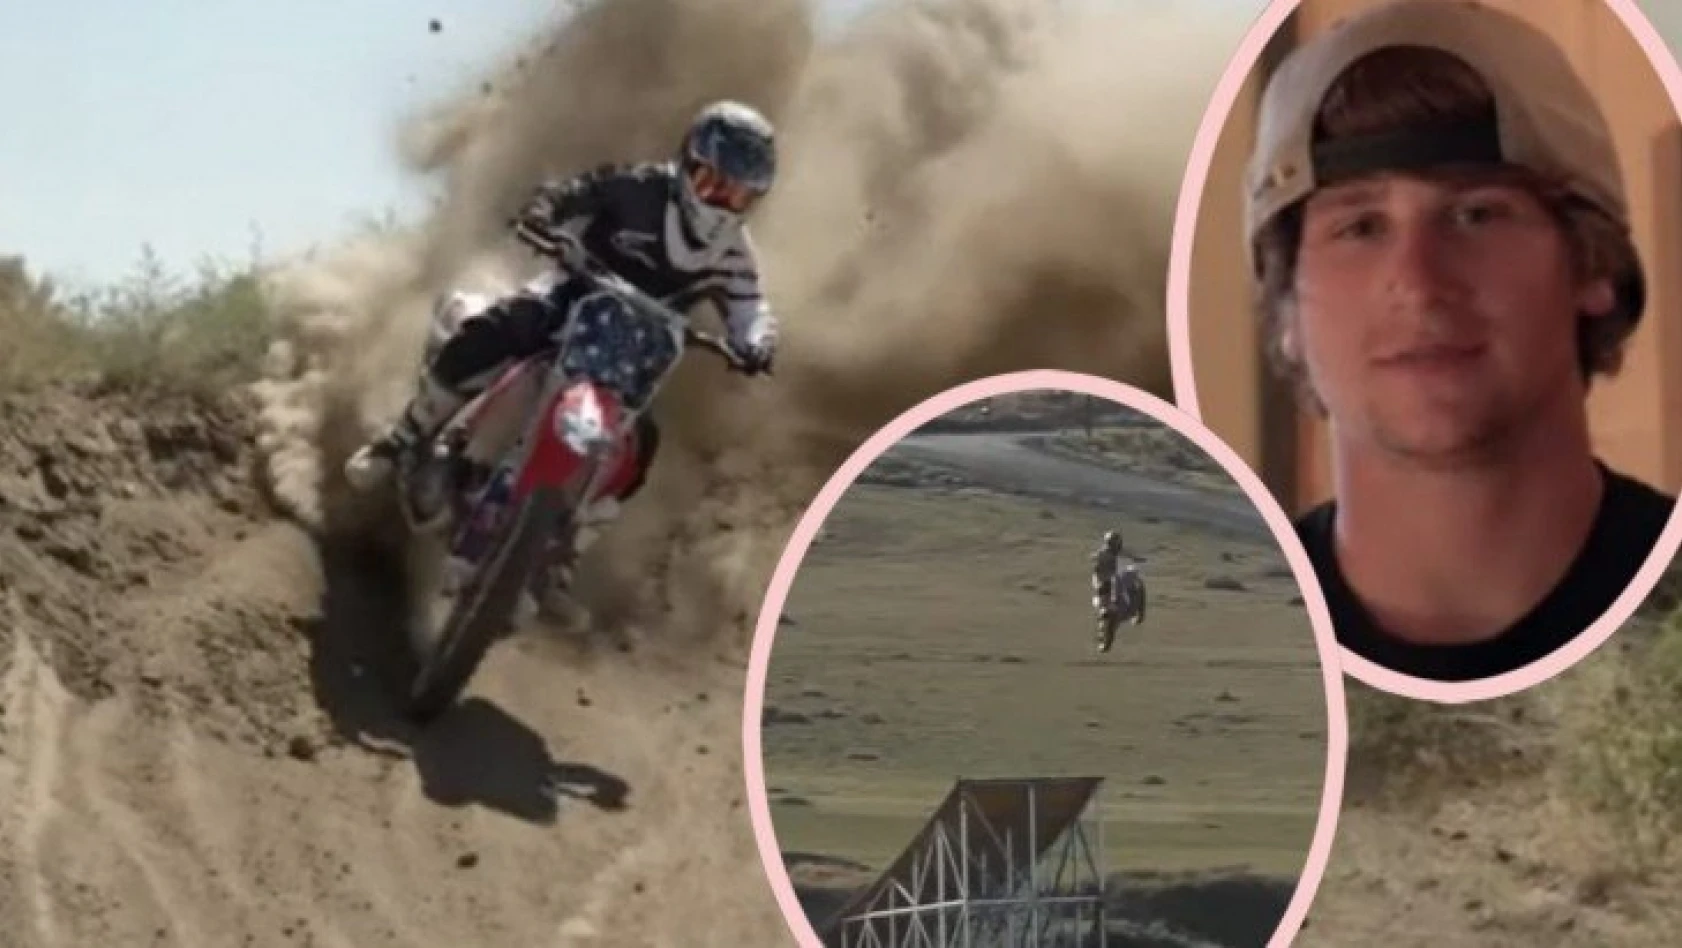 ABD'li motosikletçi Alex Harvill, dünya rekoru kırmak isterken hayatını kaybetti